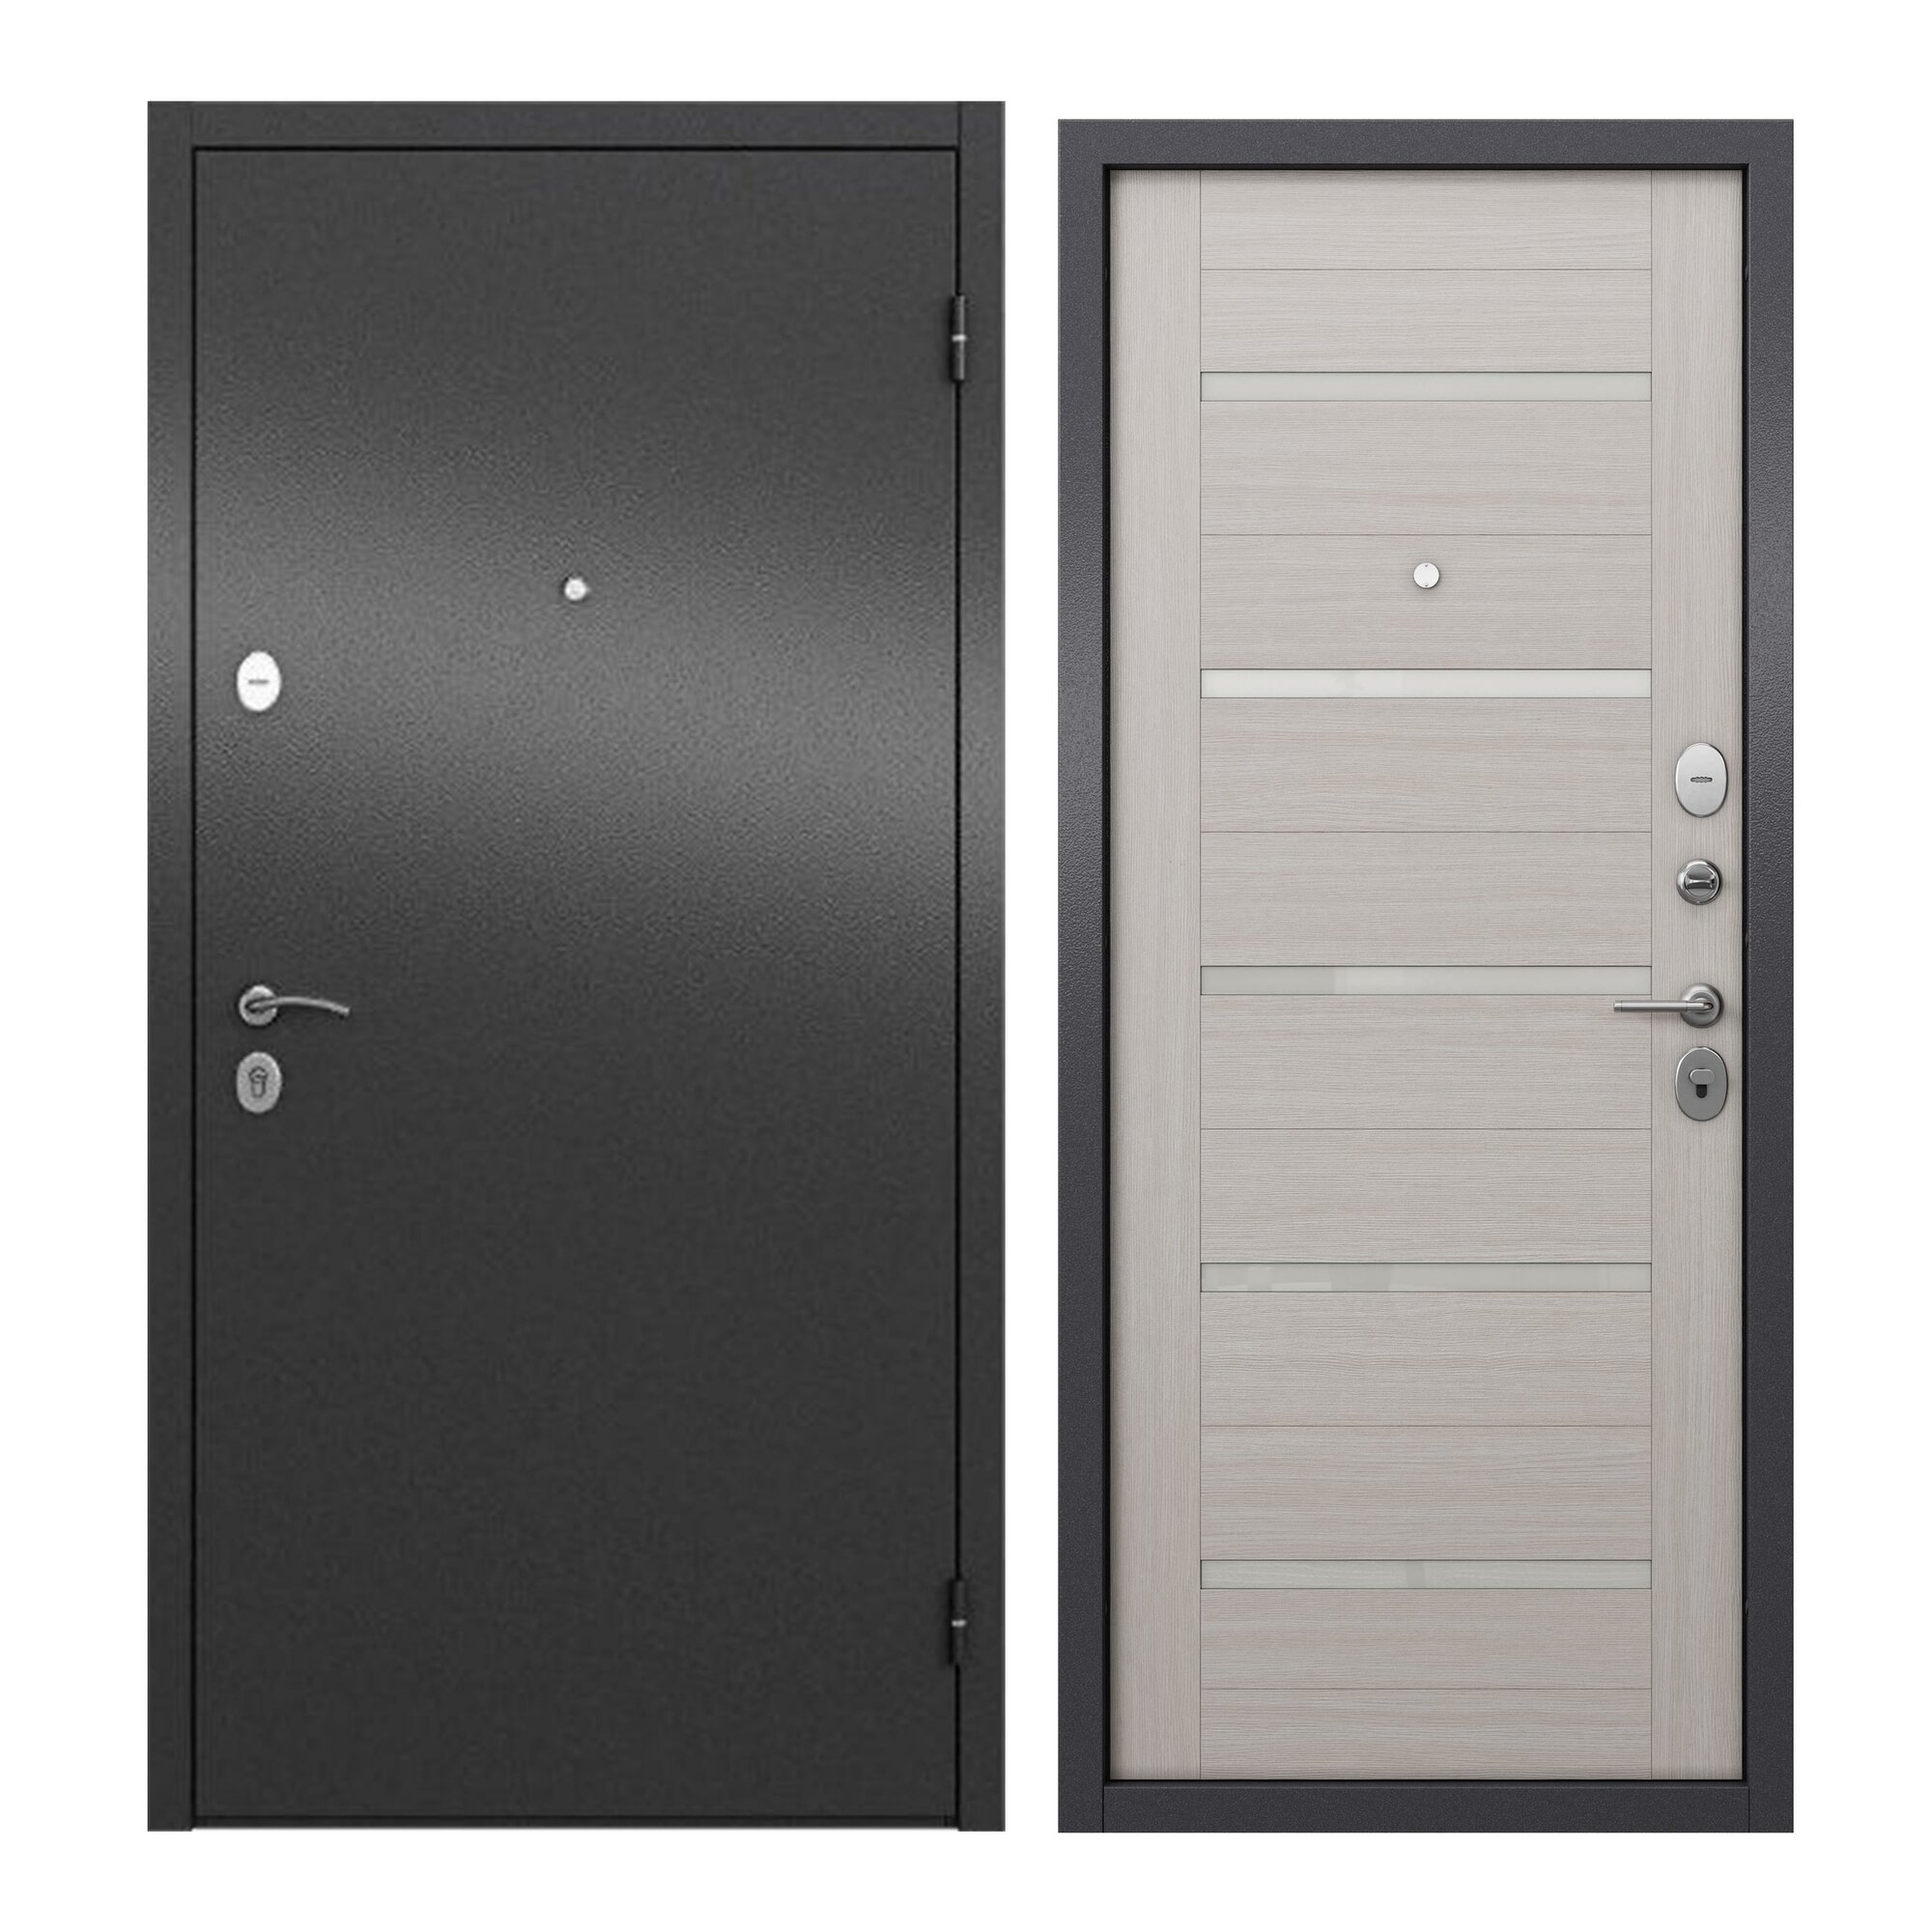 Дверь входная для квартиры ProLine металлическая Apartment X 960х2050, правая, антивандальное покрытие, два уплотнителя, замки 4го и 2го класса, серый